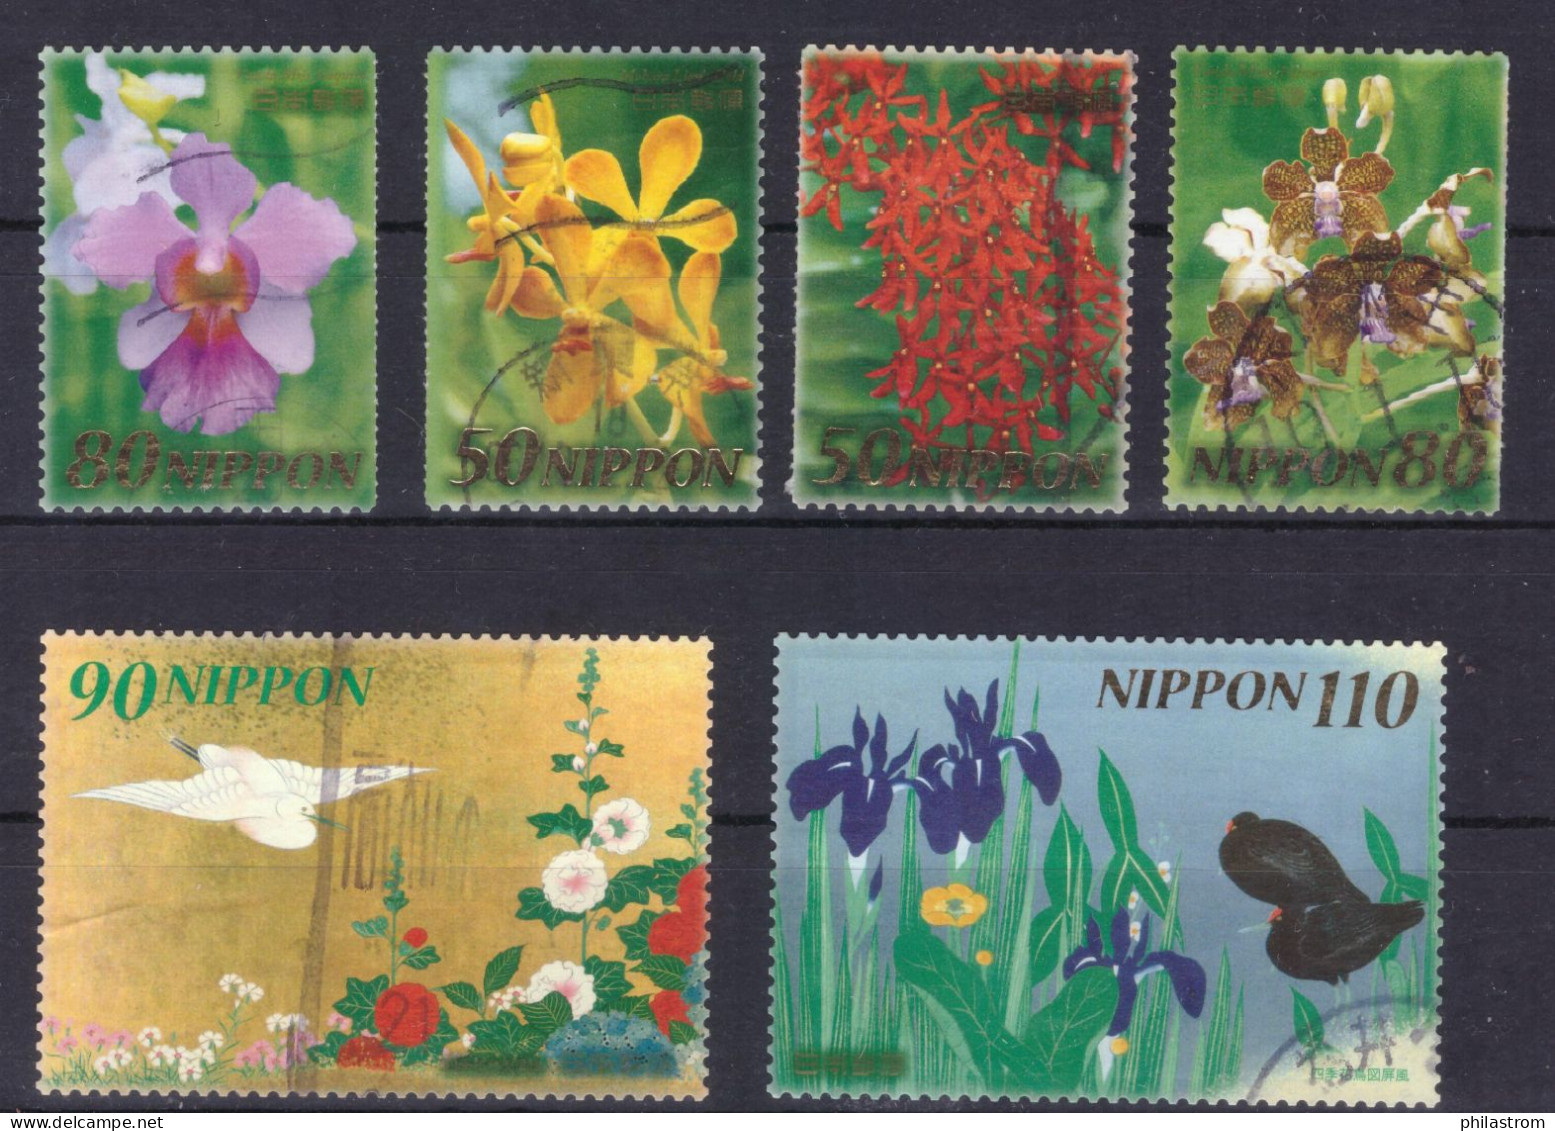 Japan - Japon - Used - Obliteré - Gestempelt - Greetings - Flowers Fleurs Blumen Flores   - (NPPN-0649) - Usati